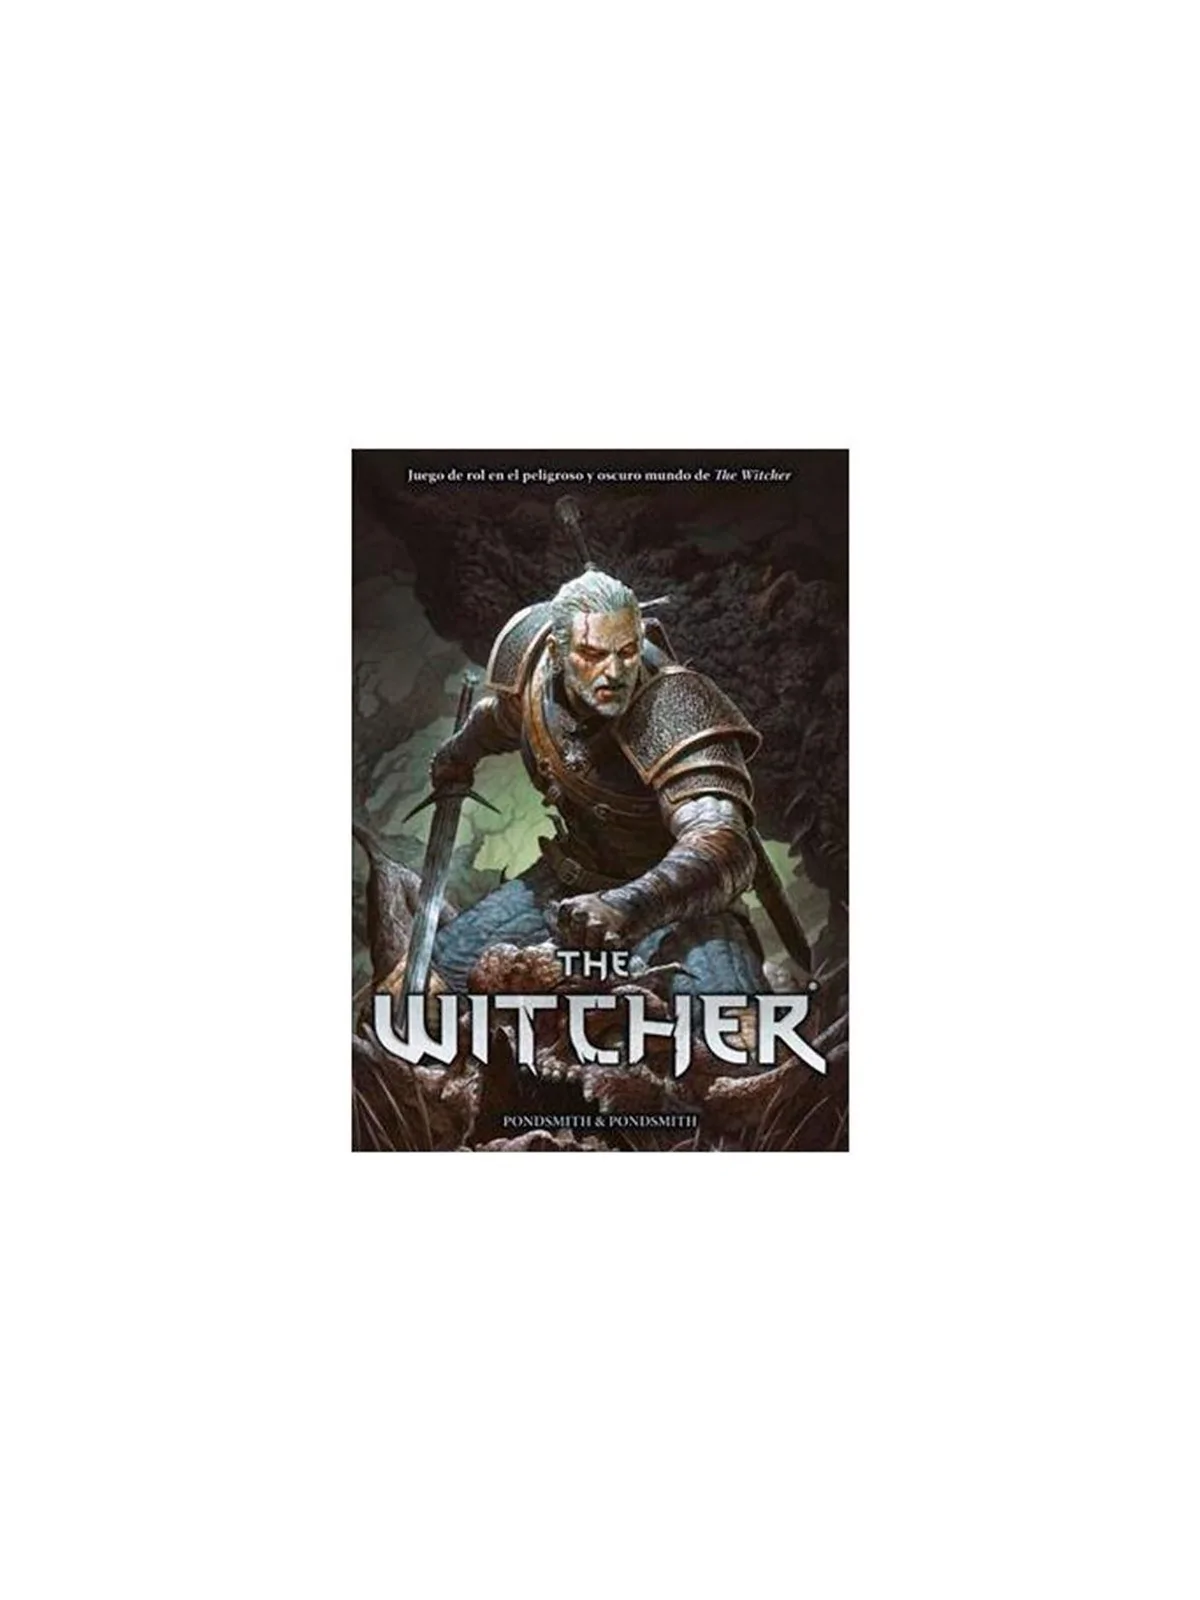 Comprar The Witcher Libro Básico barato al mejor precio 42,70 € de Hol